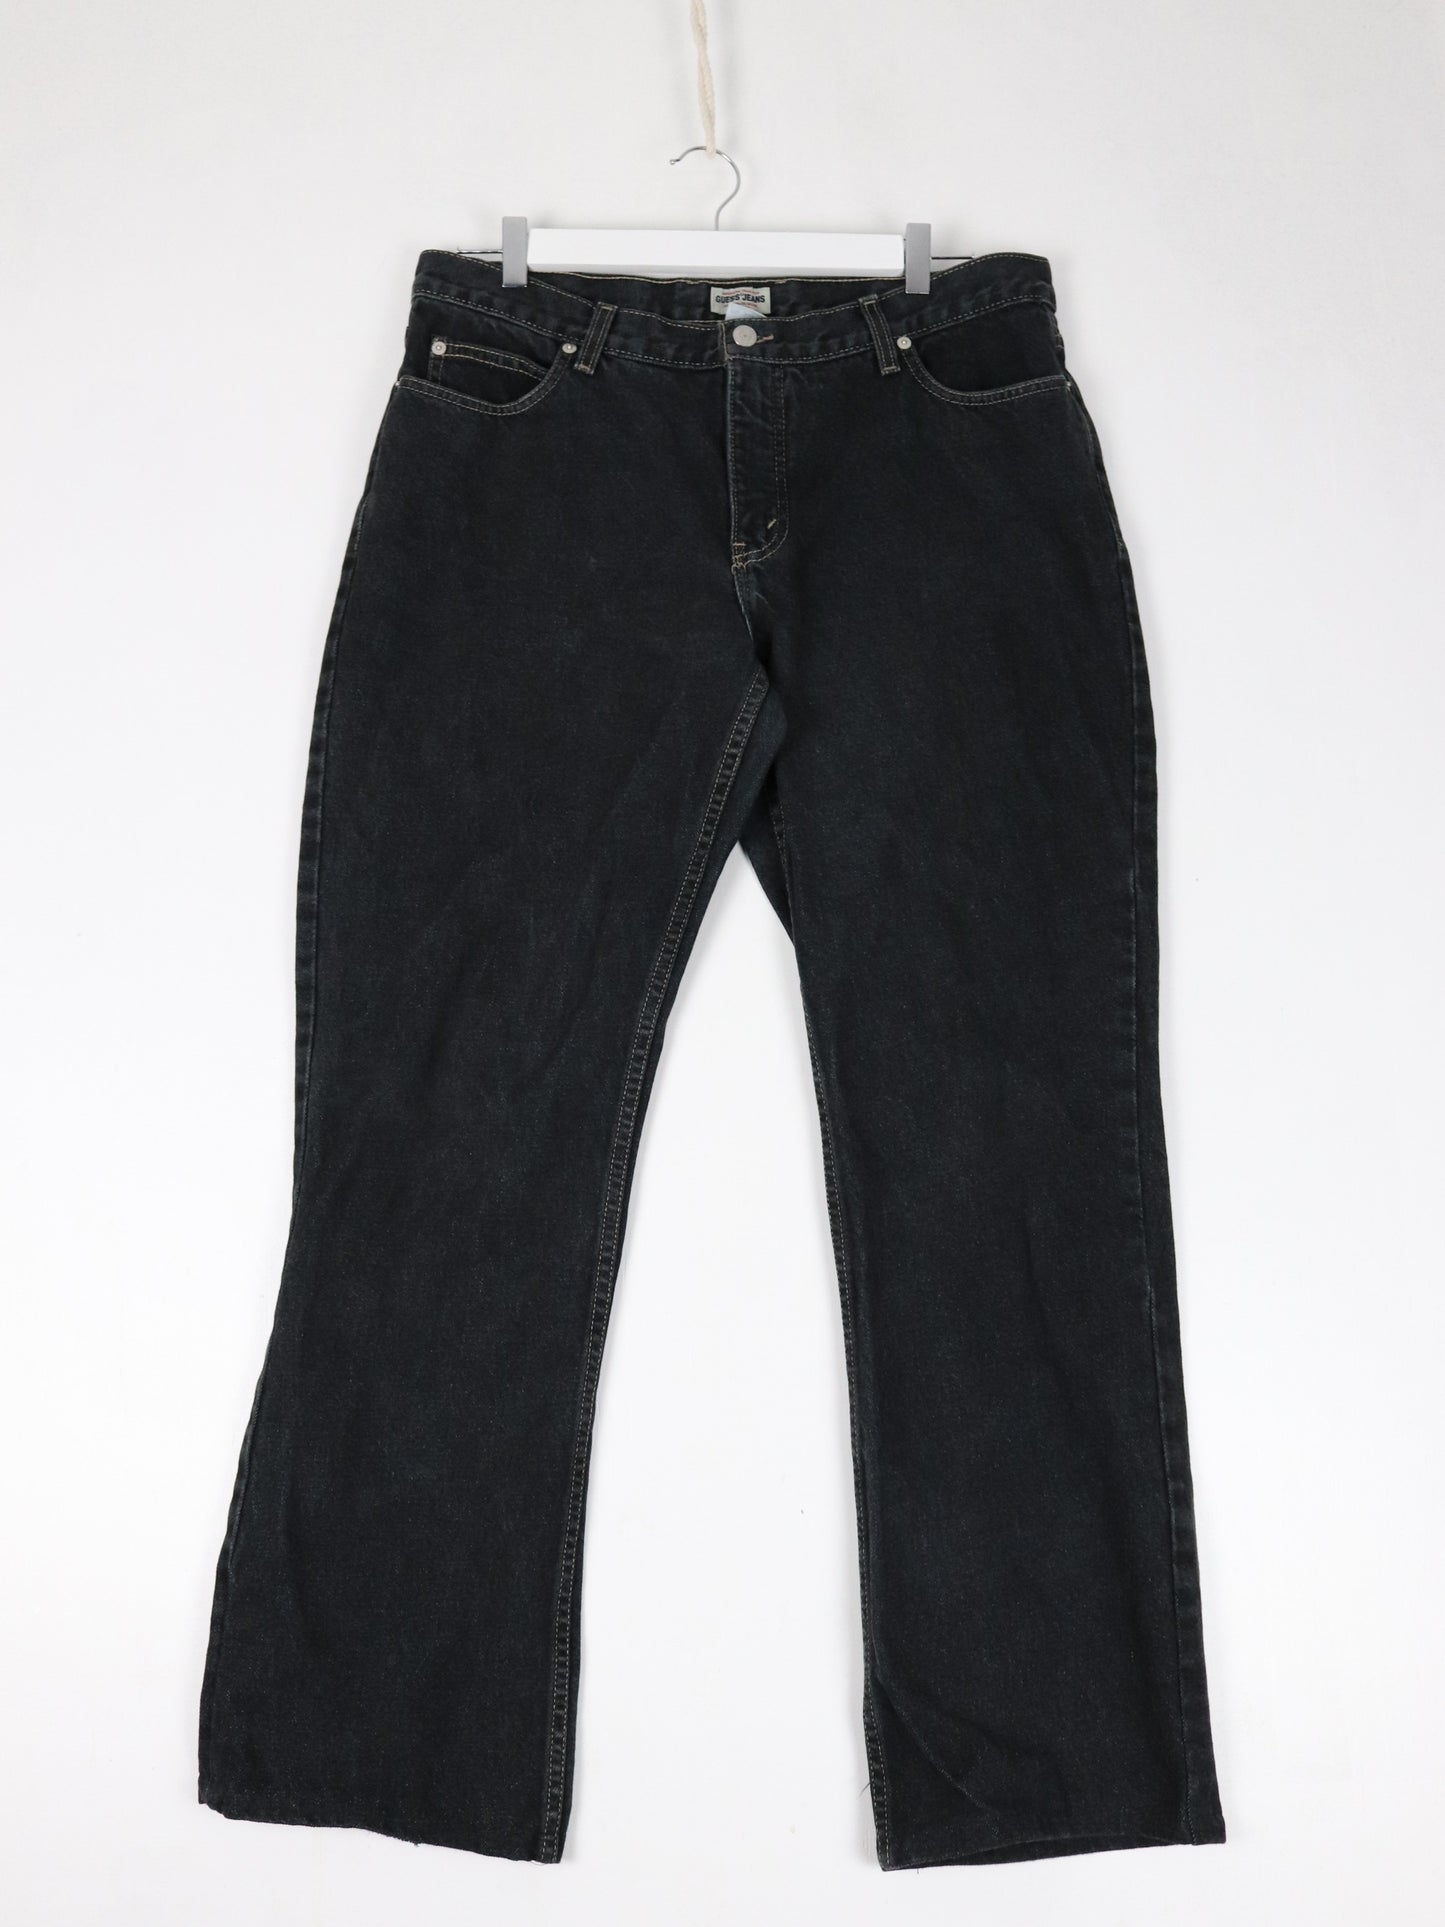 Vintage Guess Pants Mens 36 x 31 Black Denim Jeans